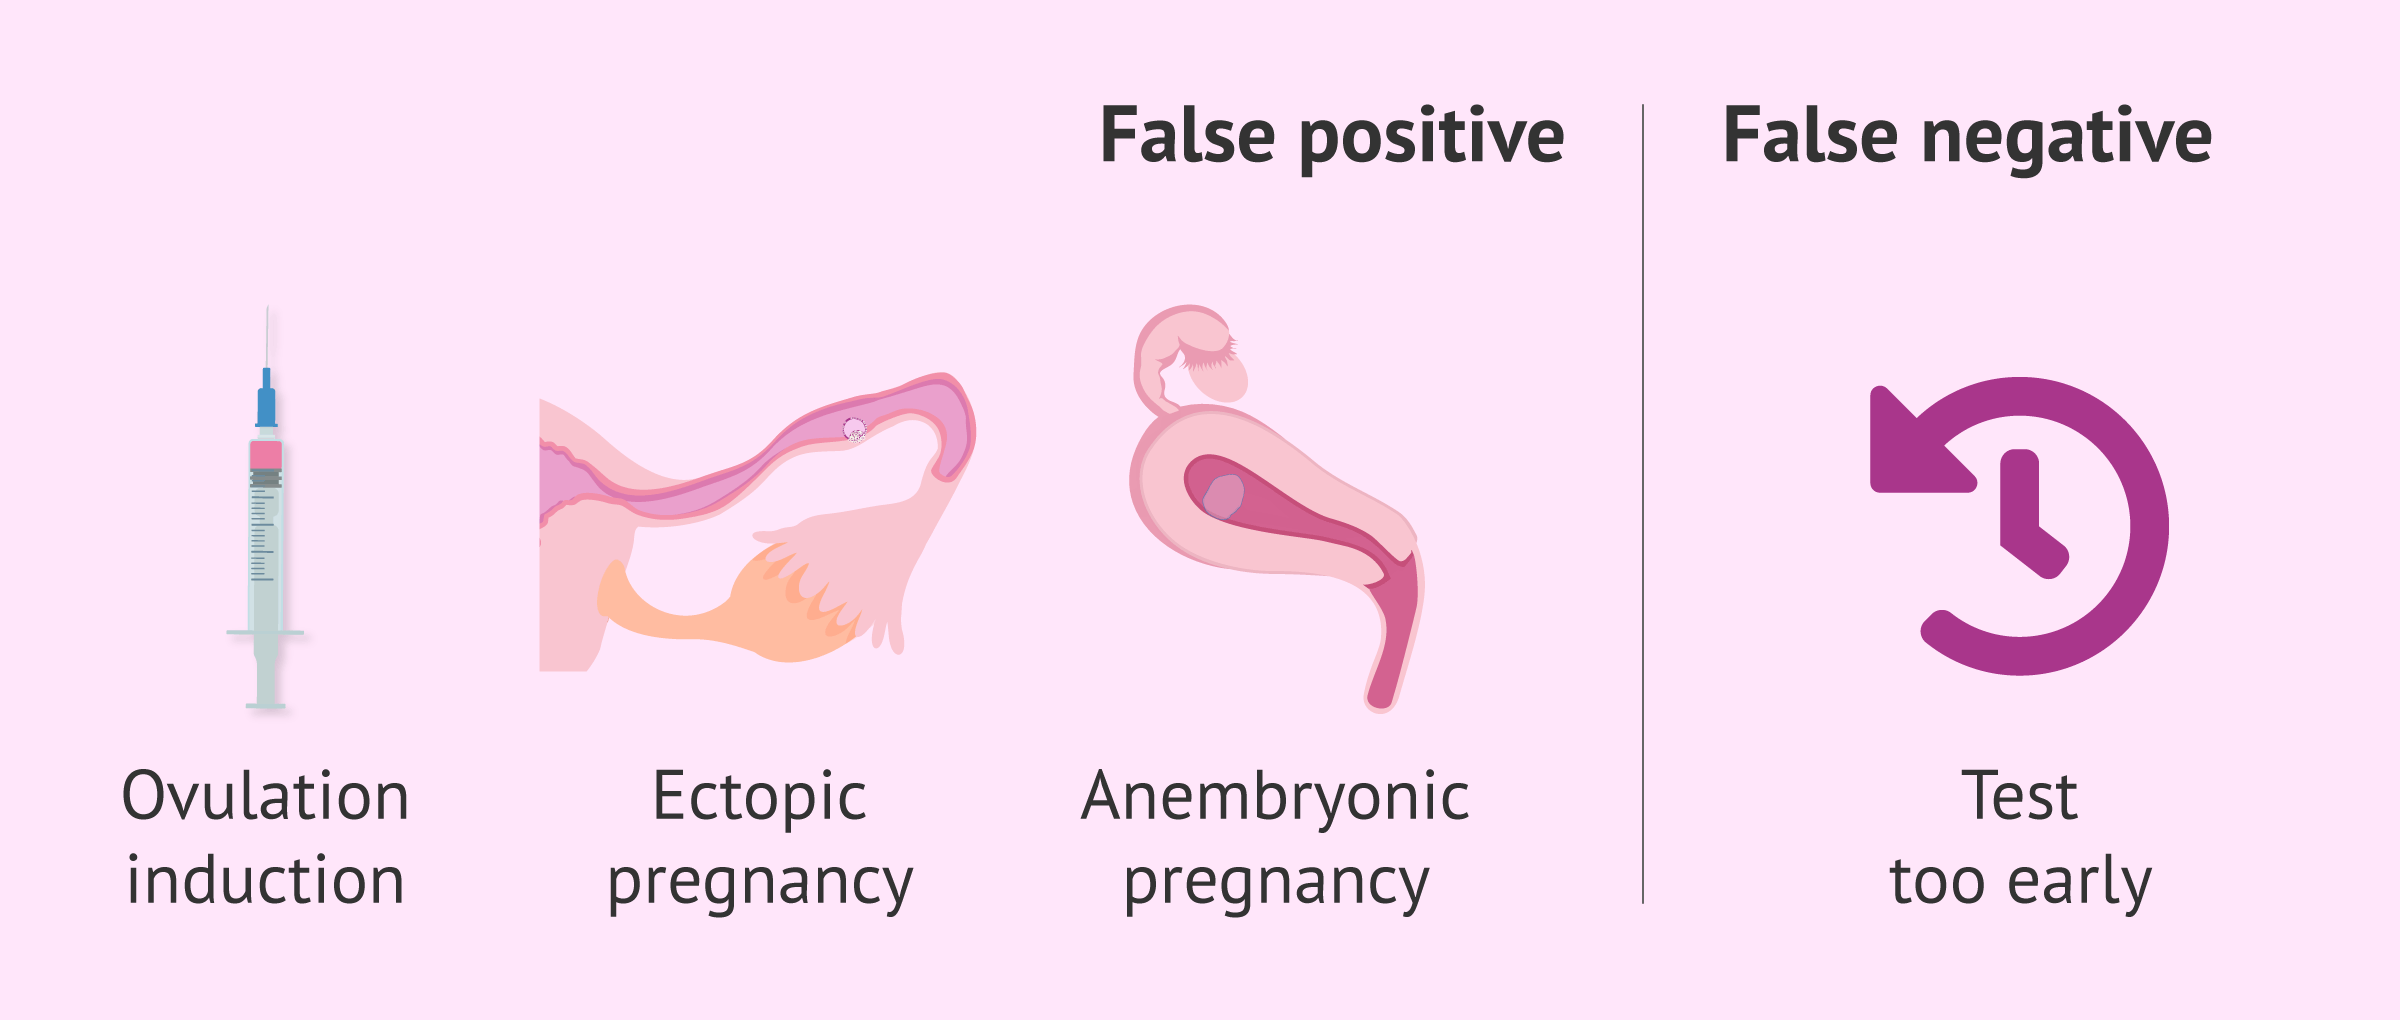 6 semanas de embarazo y test negativo